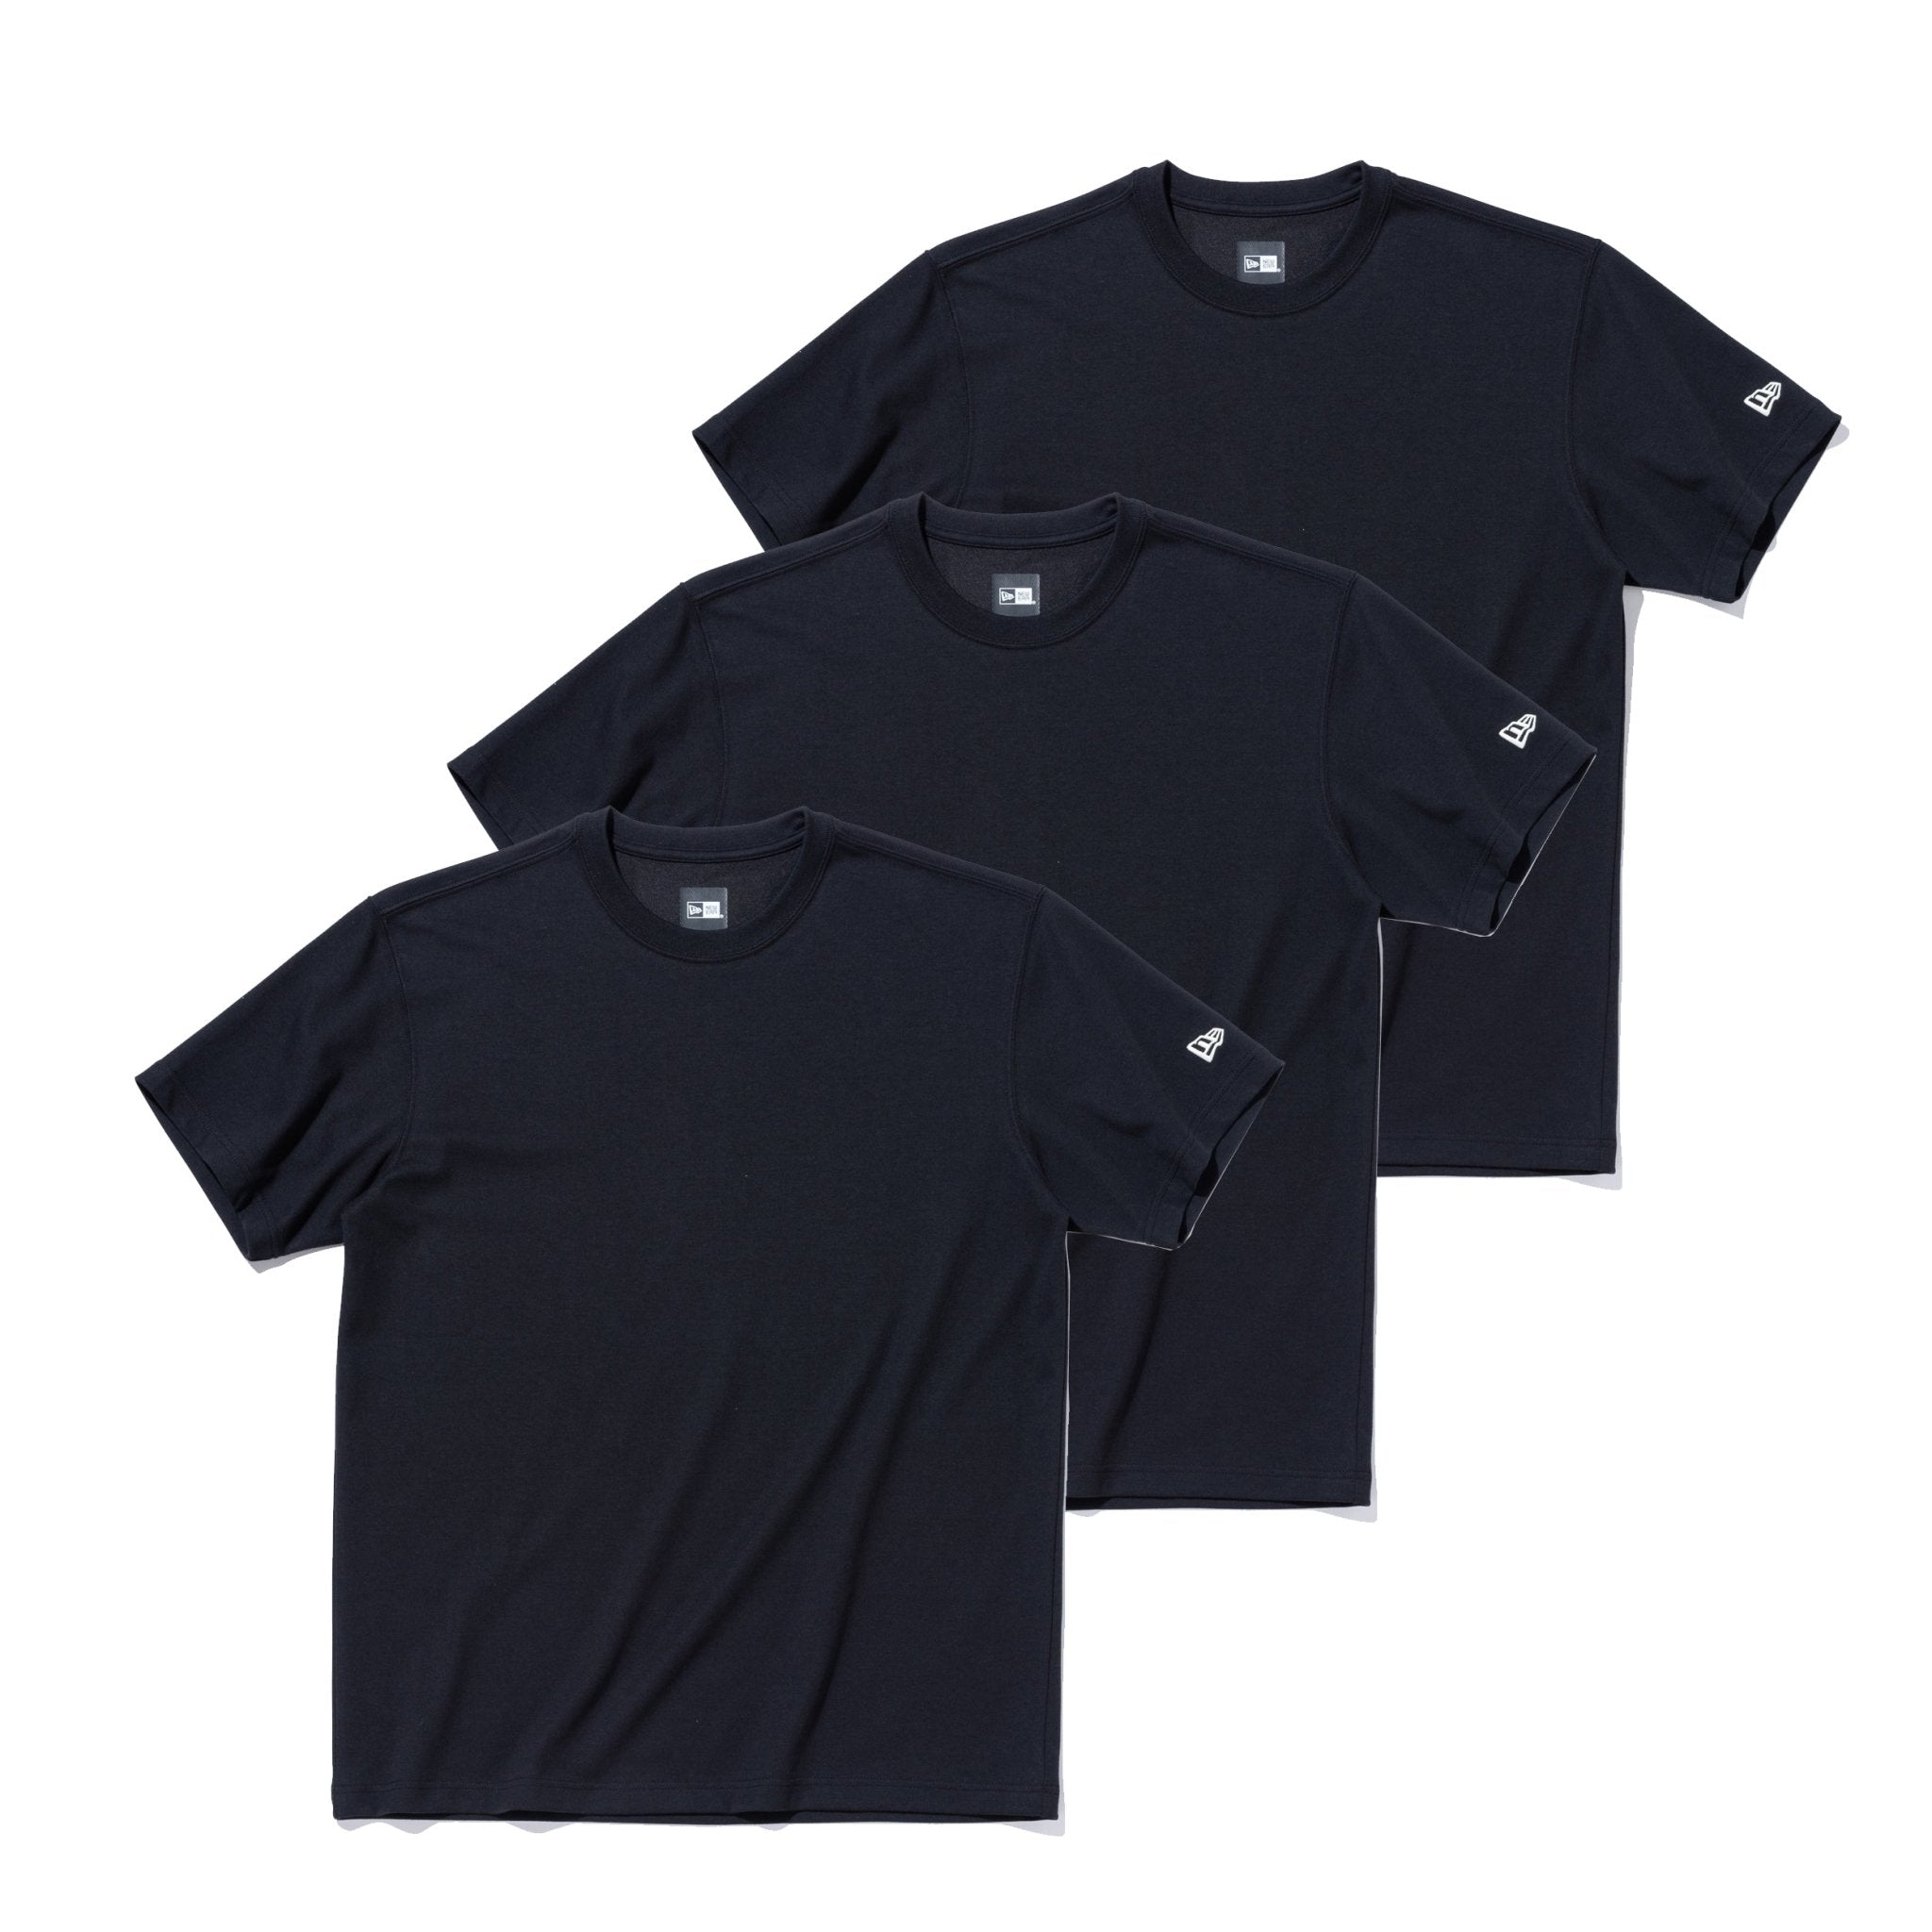 3-Pack 半袖 パフォーマンス Tシャツ ブラック | ニューエラオンライン